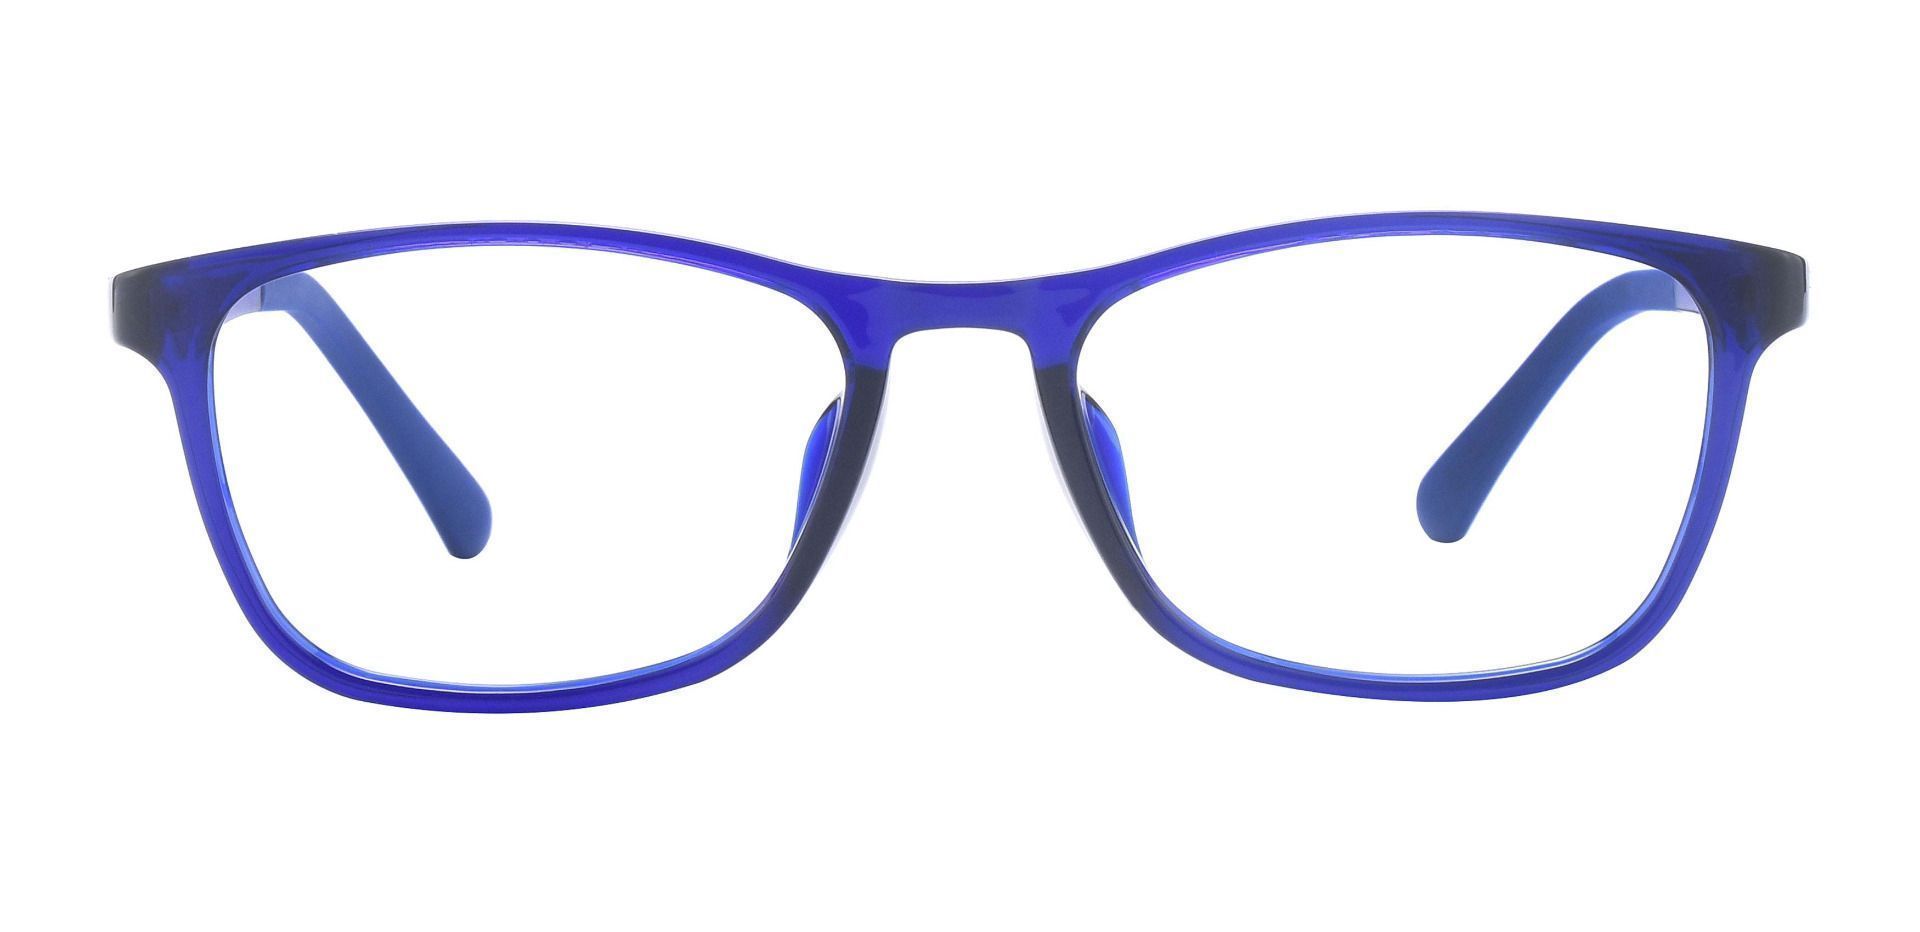 Merritt Rectangle Reading Glasses - Blue